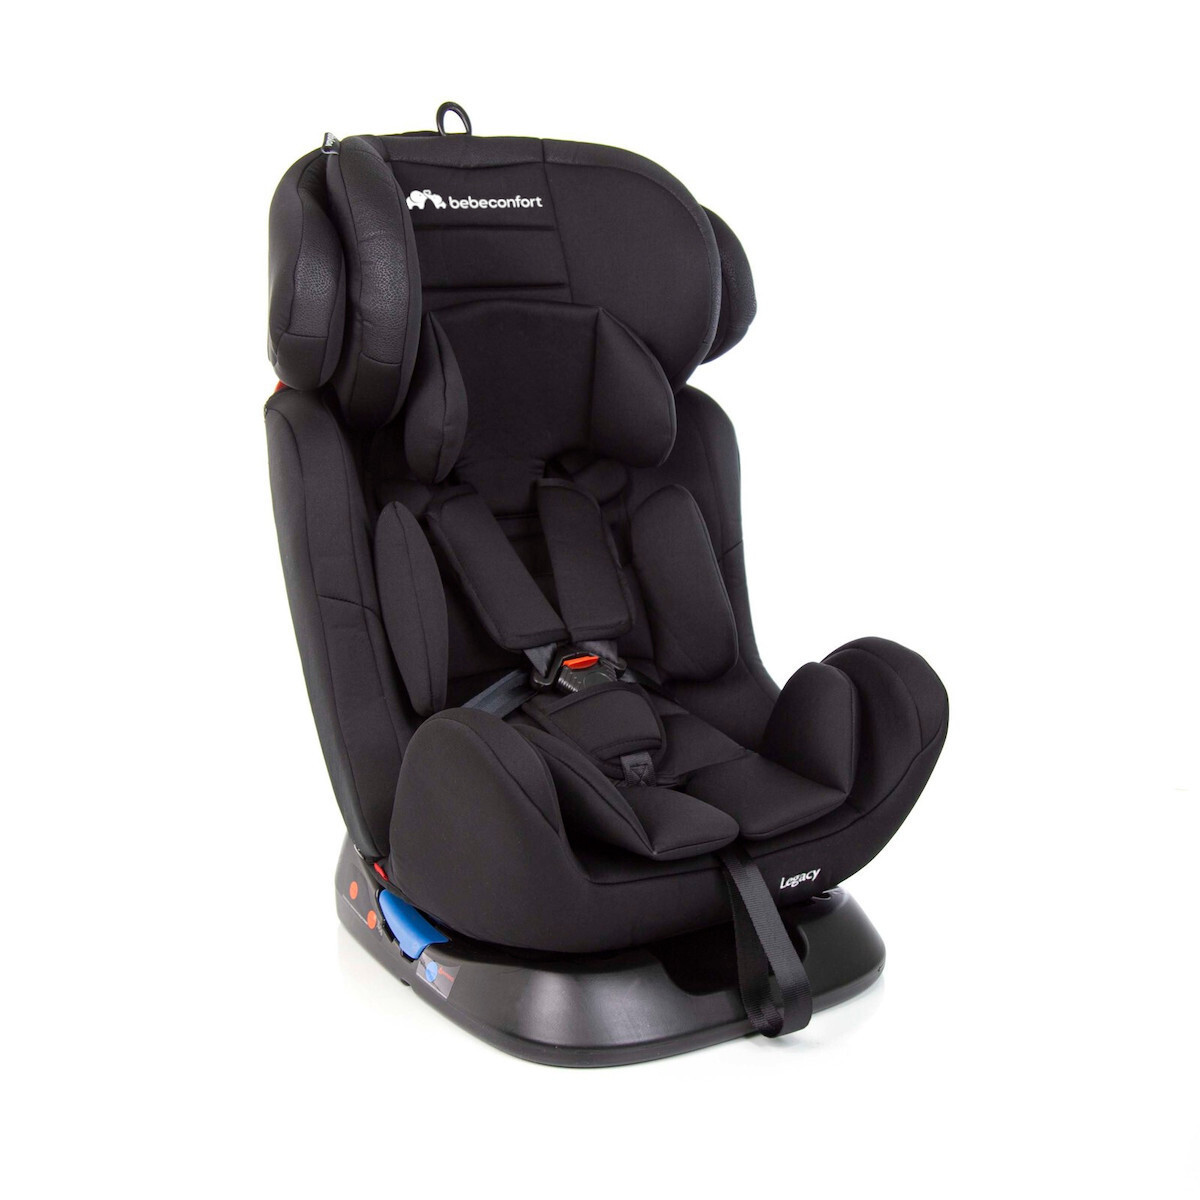 Bébé Confort car seat